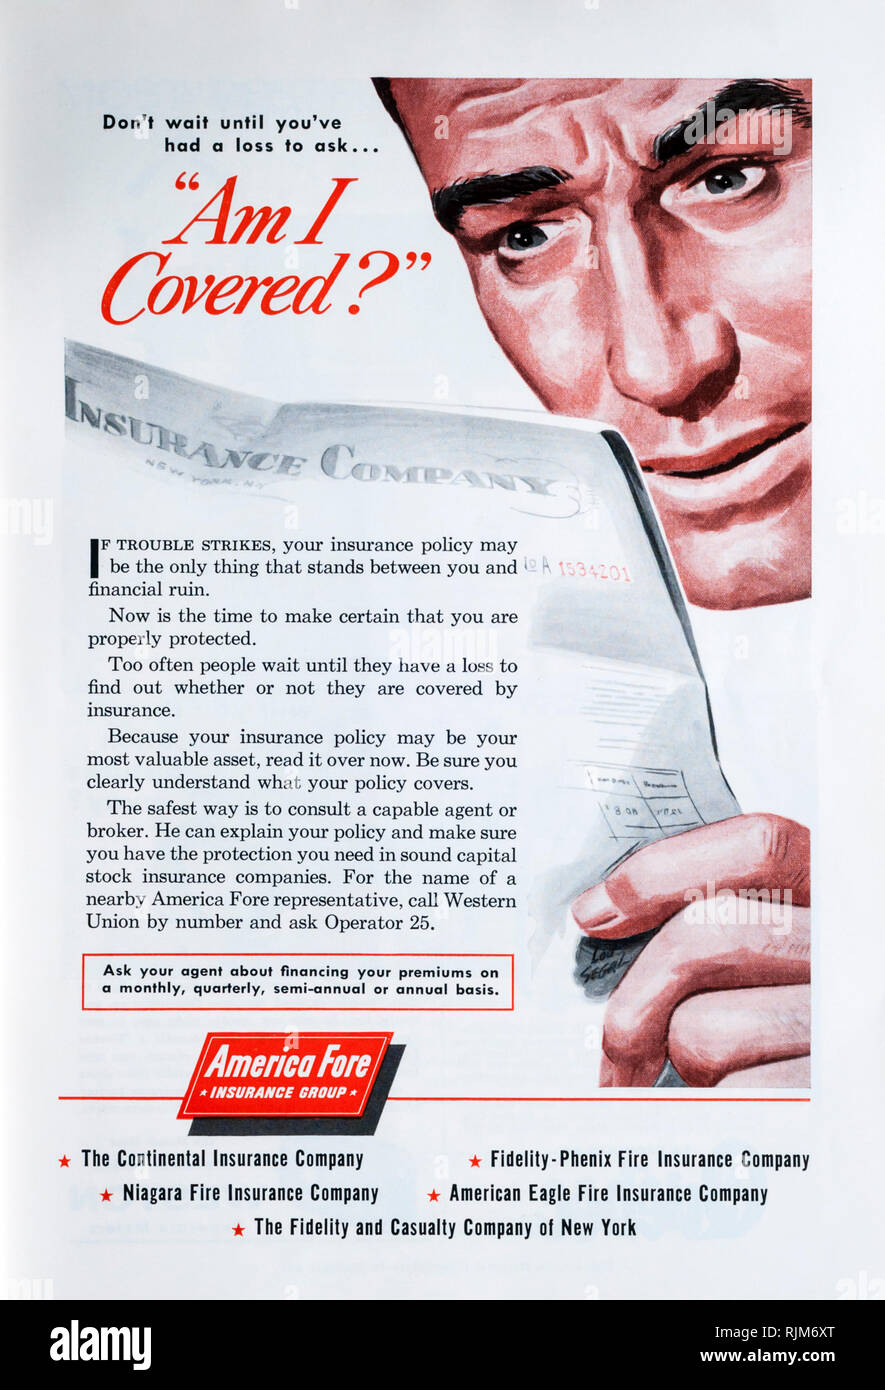 Una revista de 1955 Anuncio para American avance seguro. Foto de stock